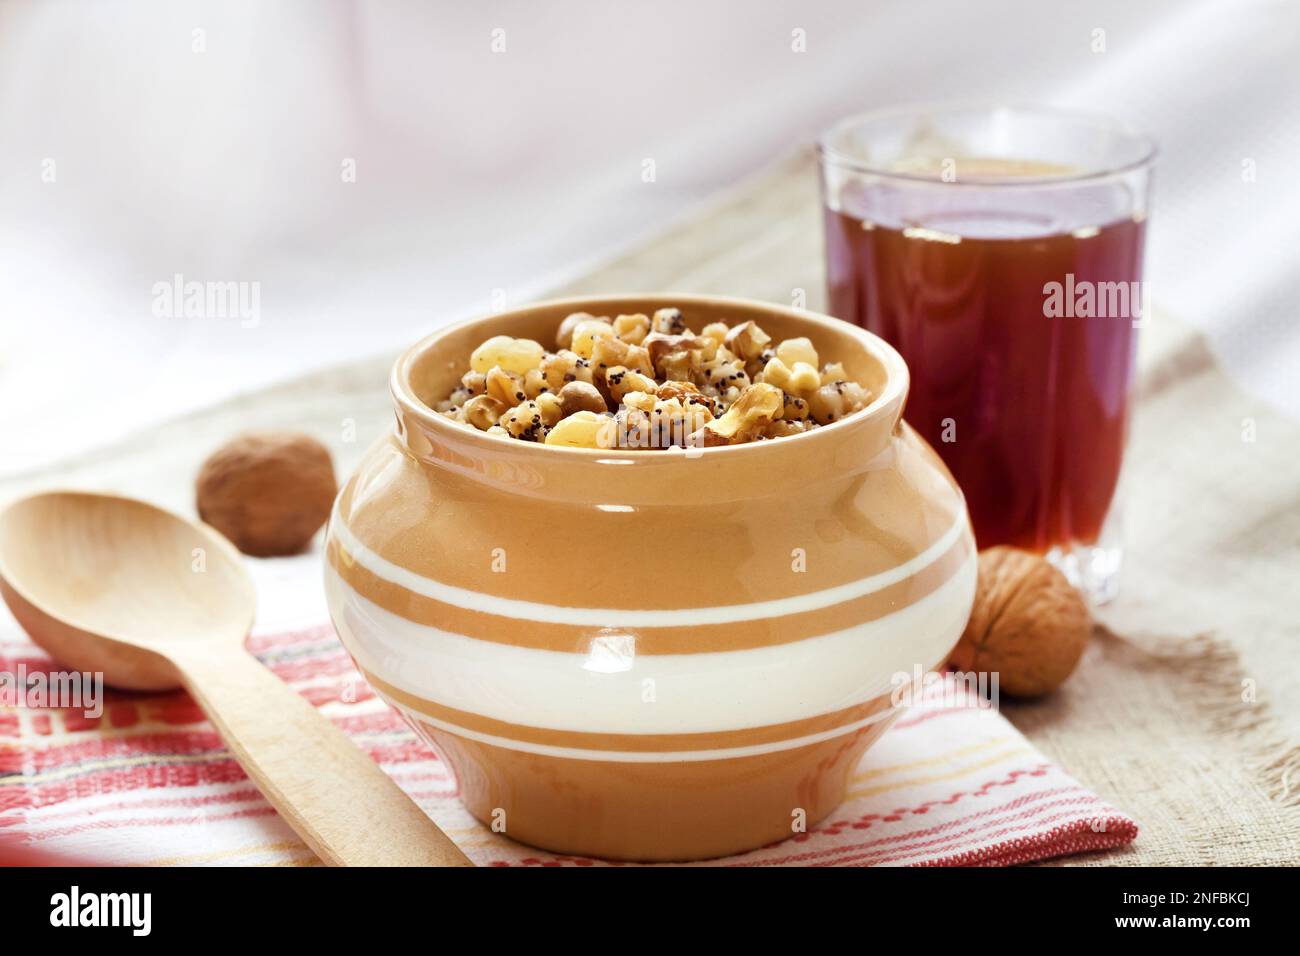 Kutia - budino di grano dolce, il primo piatto tradizionale della cena della vigilia di Natale servito nei paesi dell'Europa orientale Foto Stock